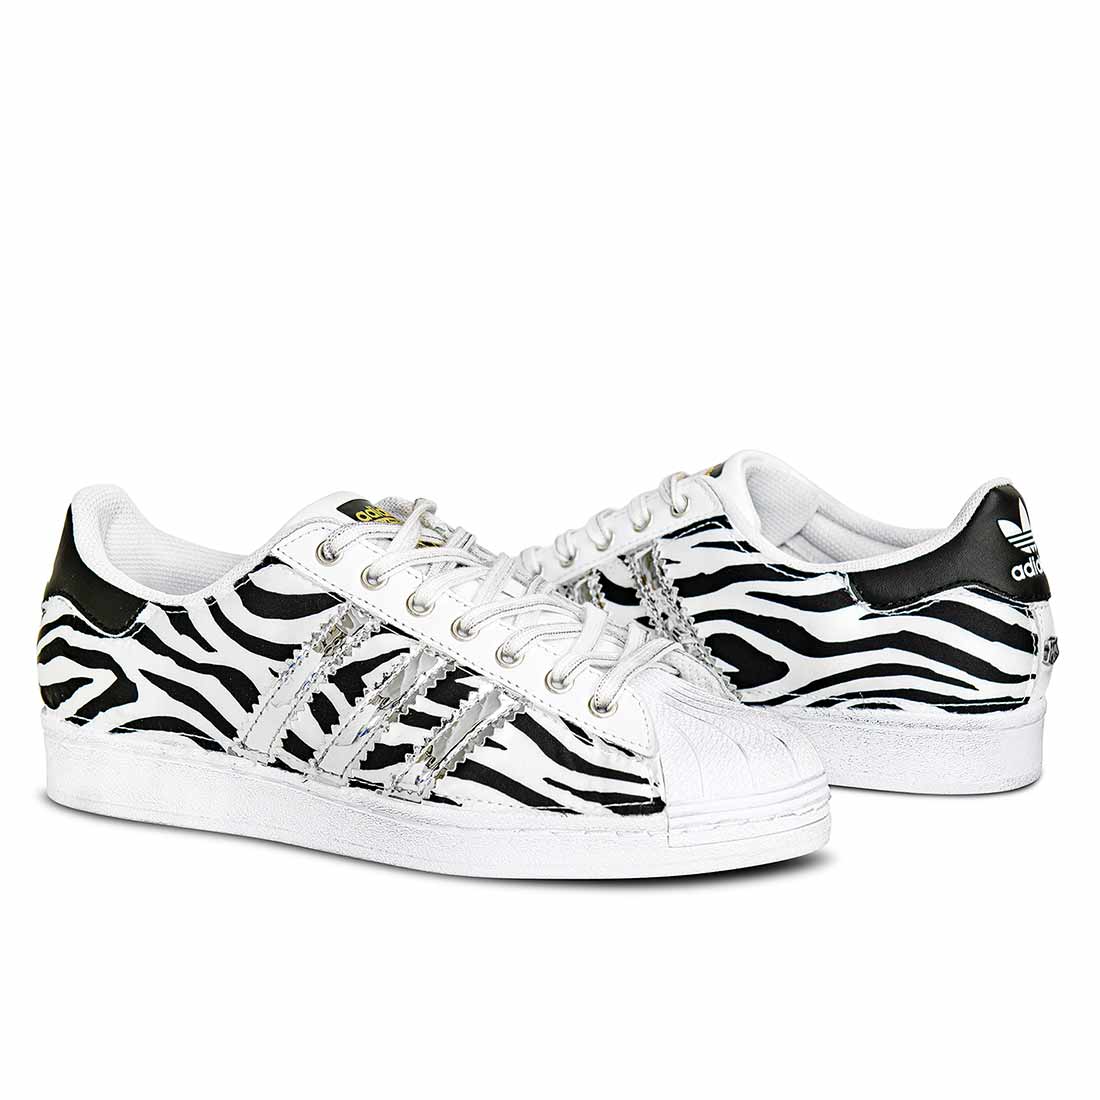 scarpe adidas superstar zebrate sneakers personalizzate bianche e nere con strisce argento a specchio